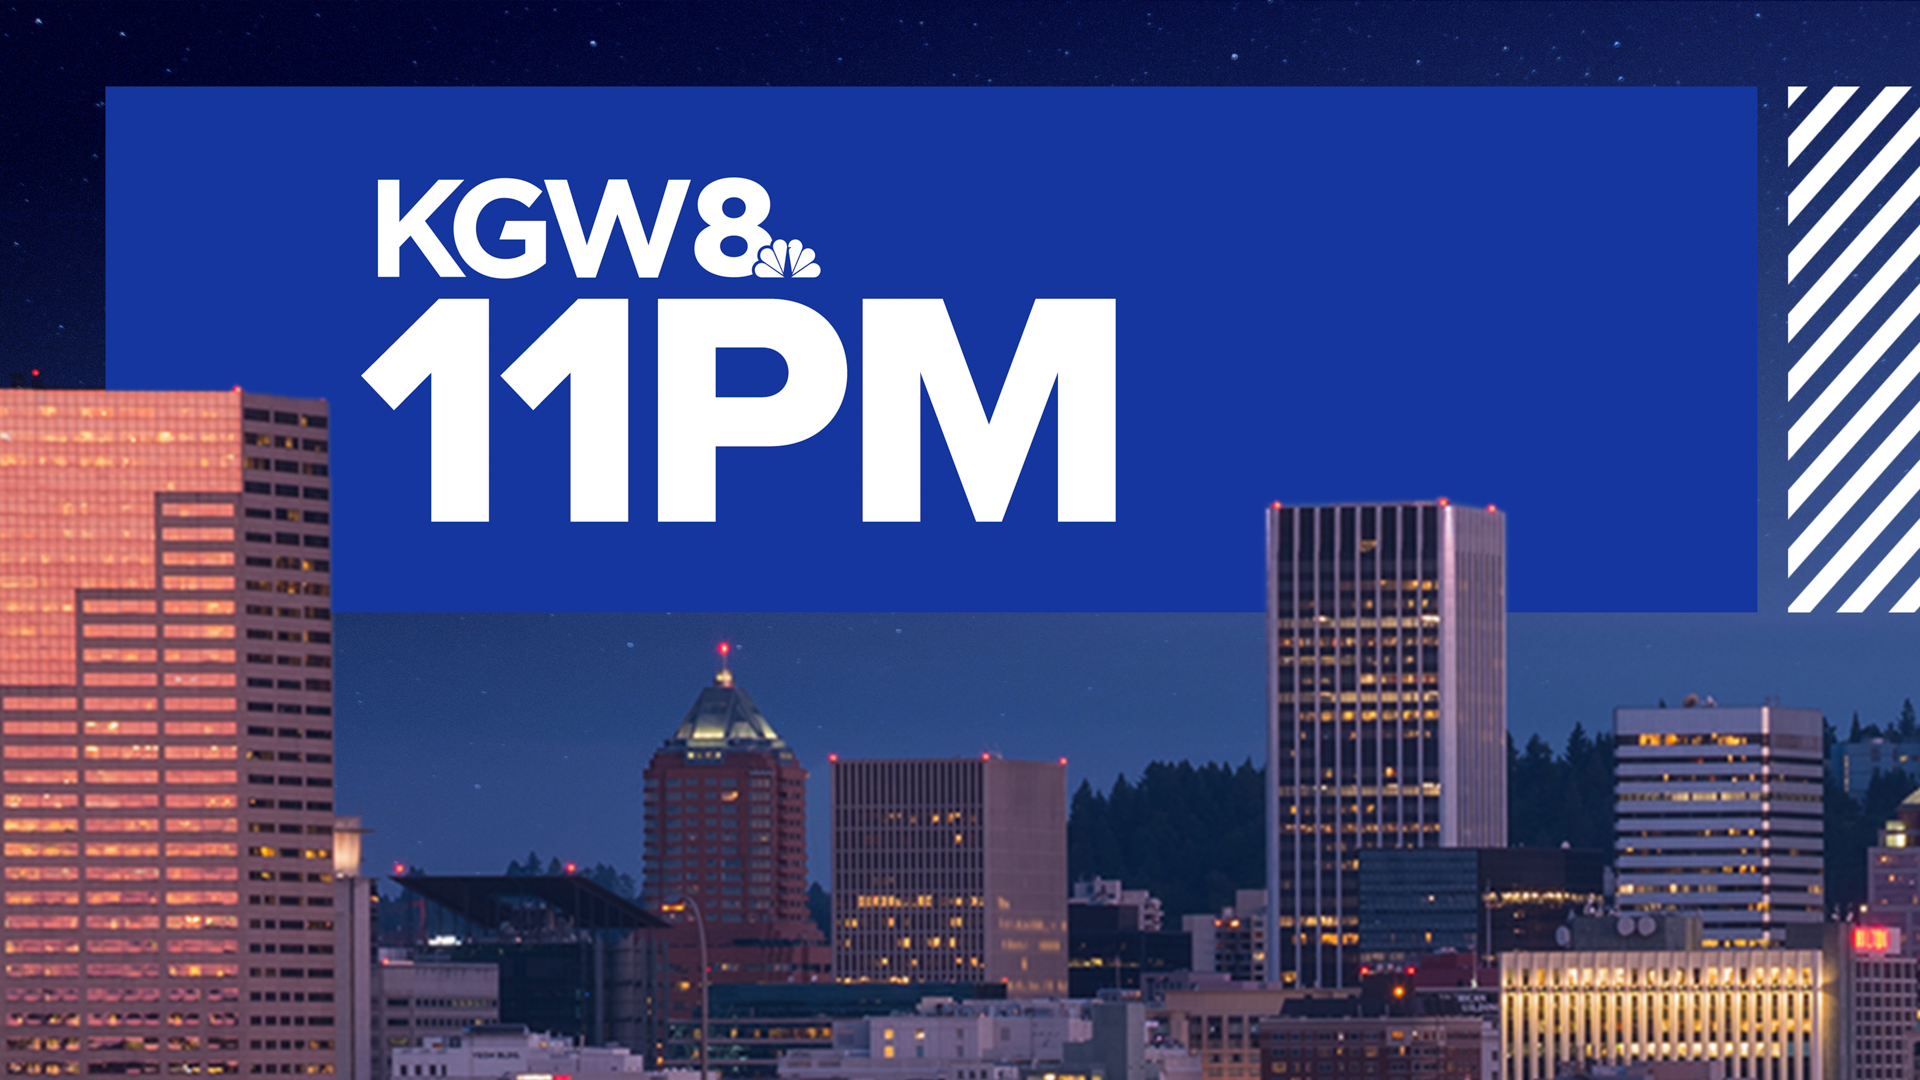 KGW Top Stories: 11 p.m., Monday, June 6, 2022